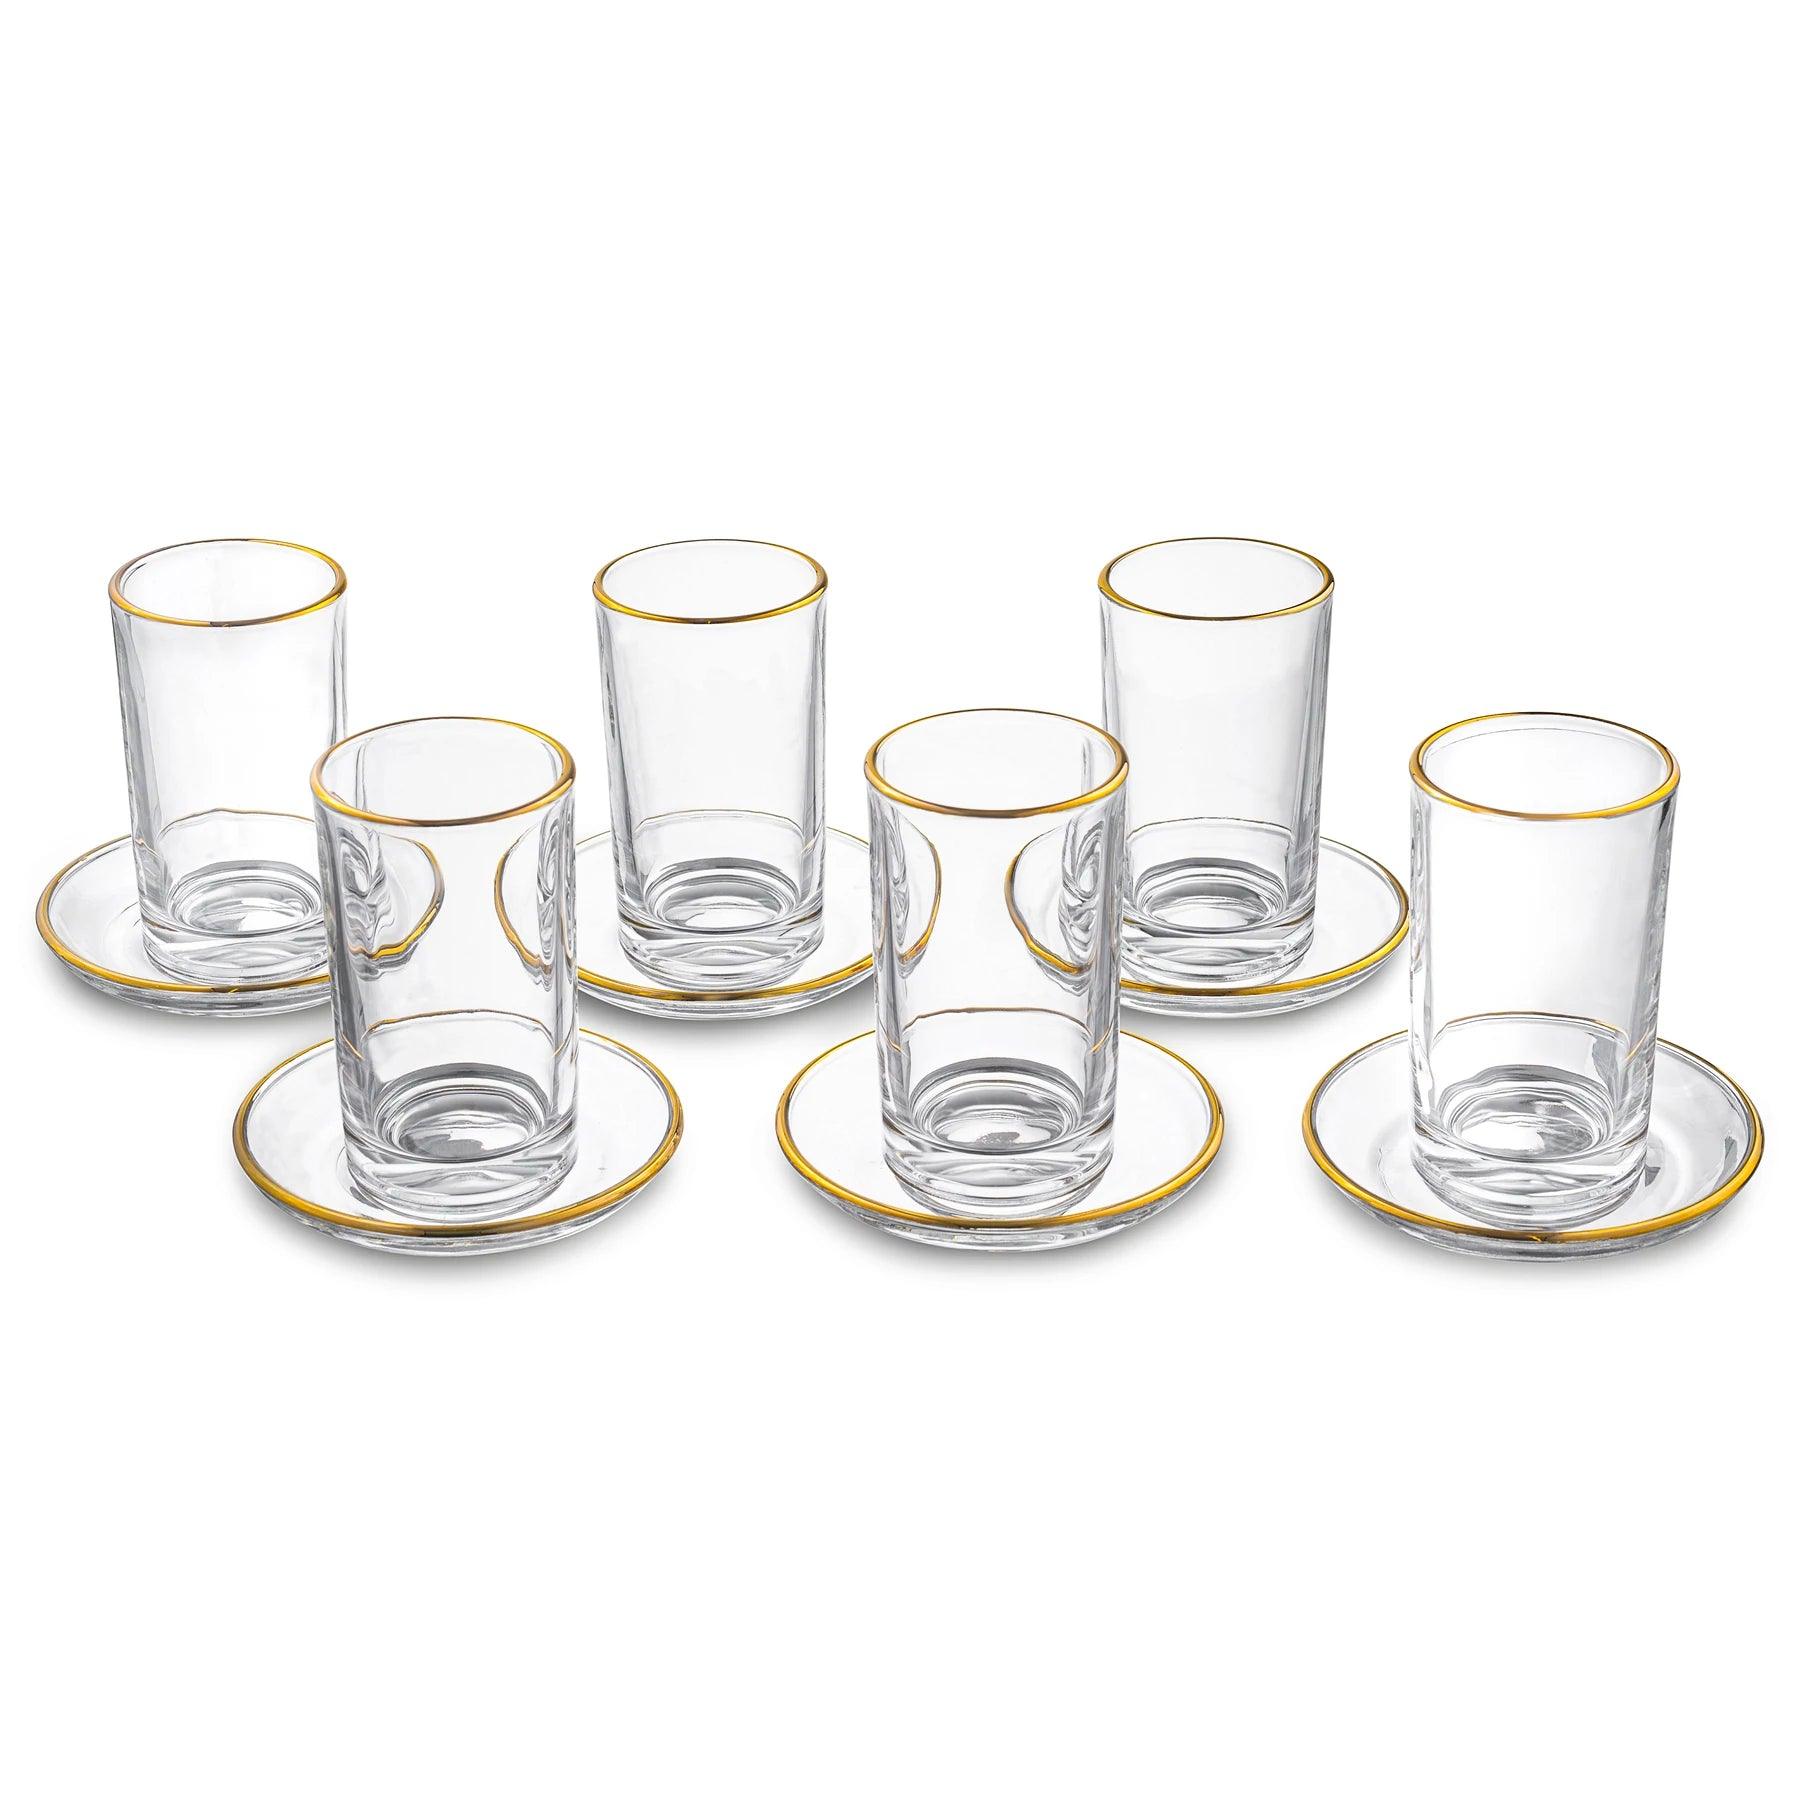 https://elegantlinen.com/cdn/shop/products/modern-glass-cups-and-saucers-elegant-linen-1.webp?v=1700171684